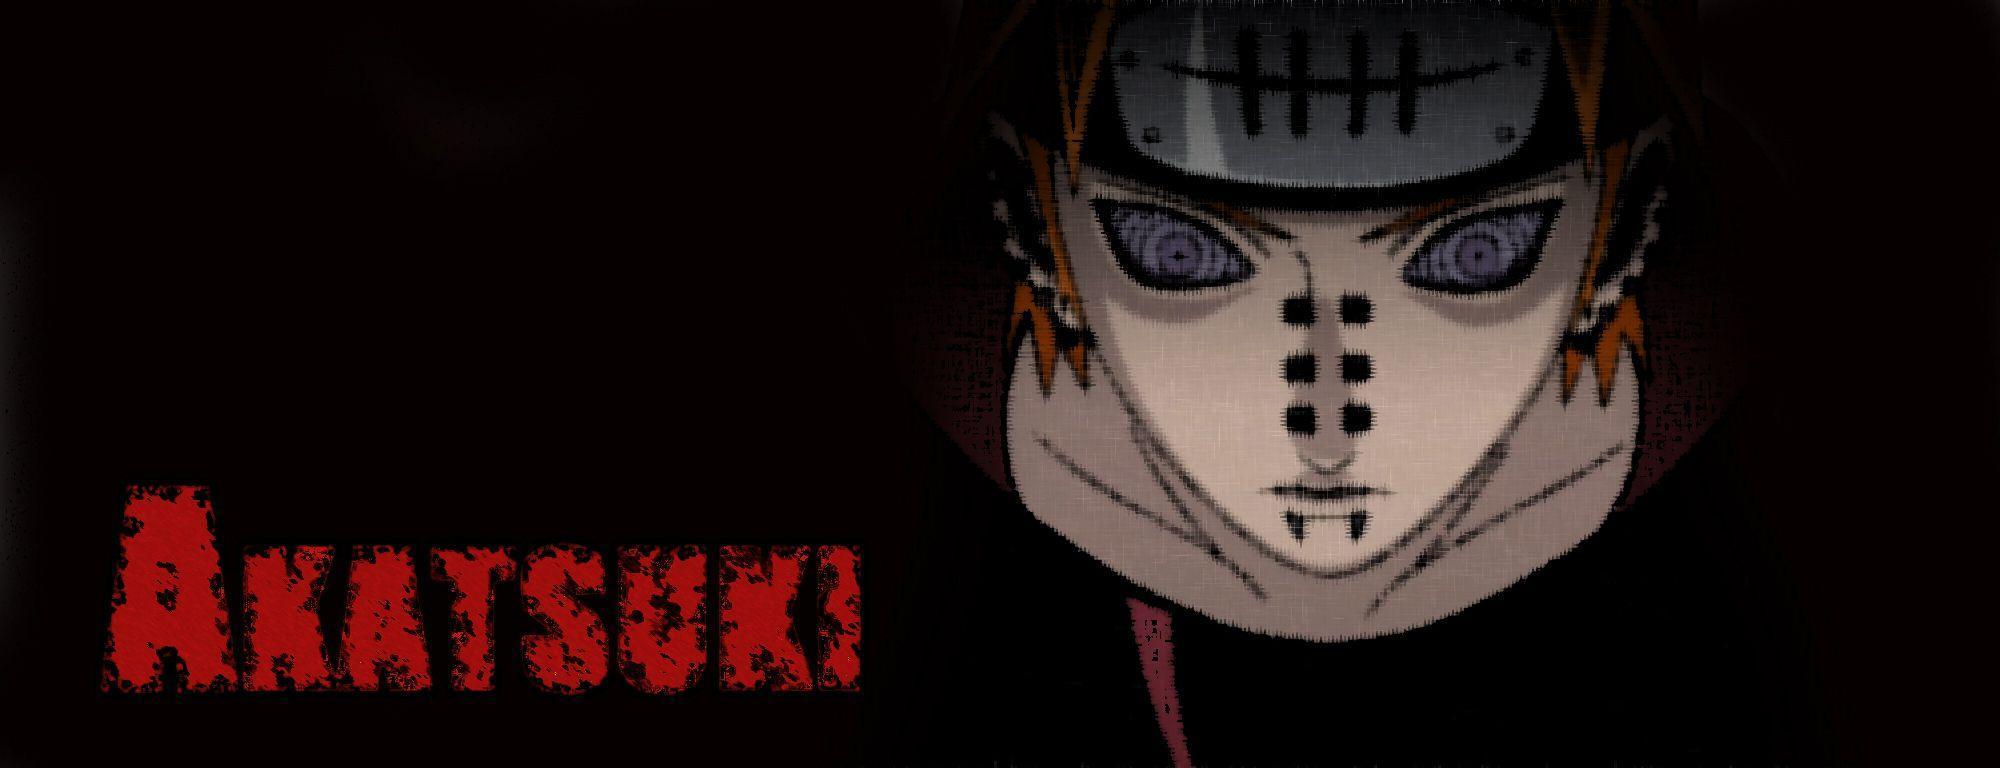 Akatsuki (Naruto) HD Wallpaper